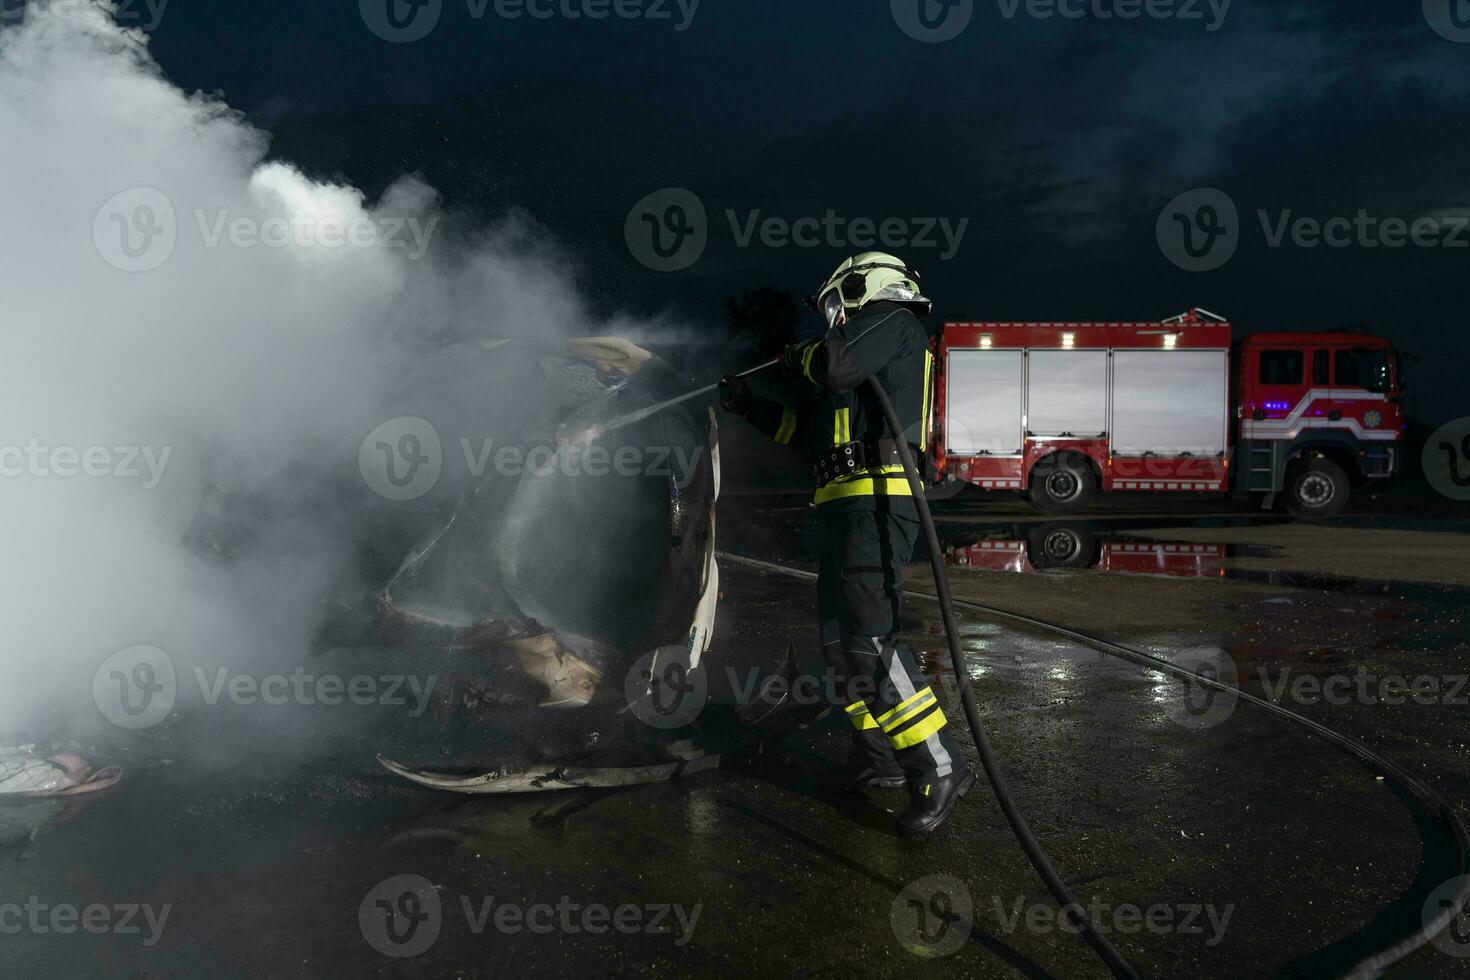 bomberos utilizando agua fuego extintor a luchando con el fuego fuego en coche accidente. bombero industrial y público la seguridad concepto rescate en noche. foto